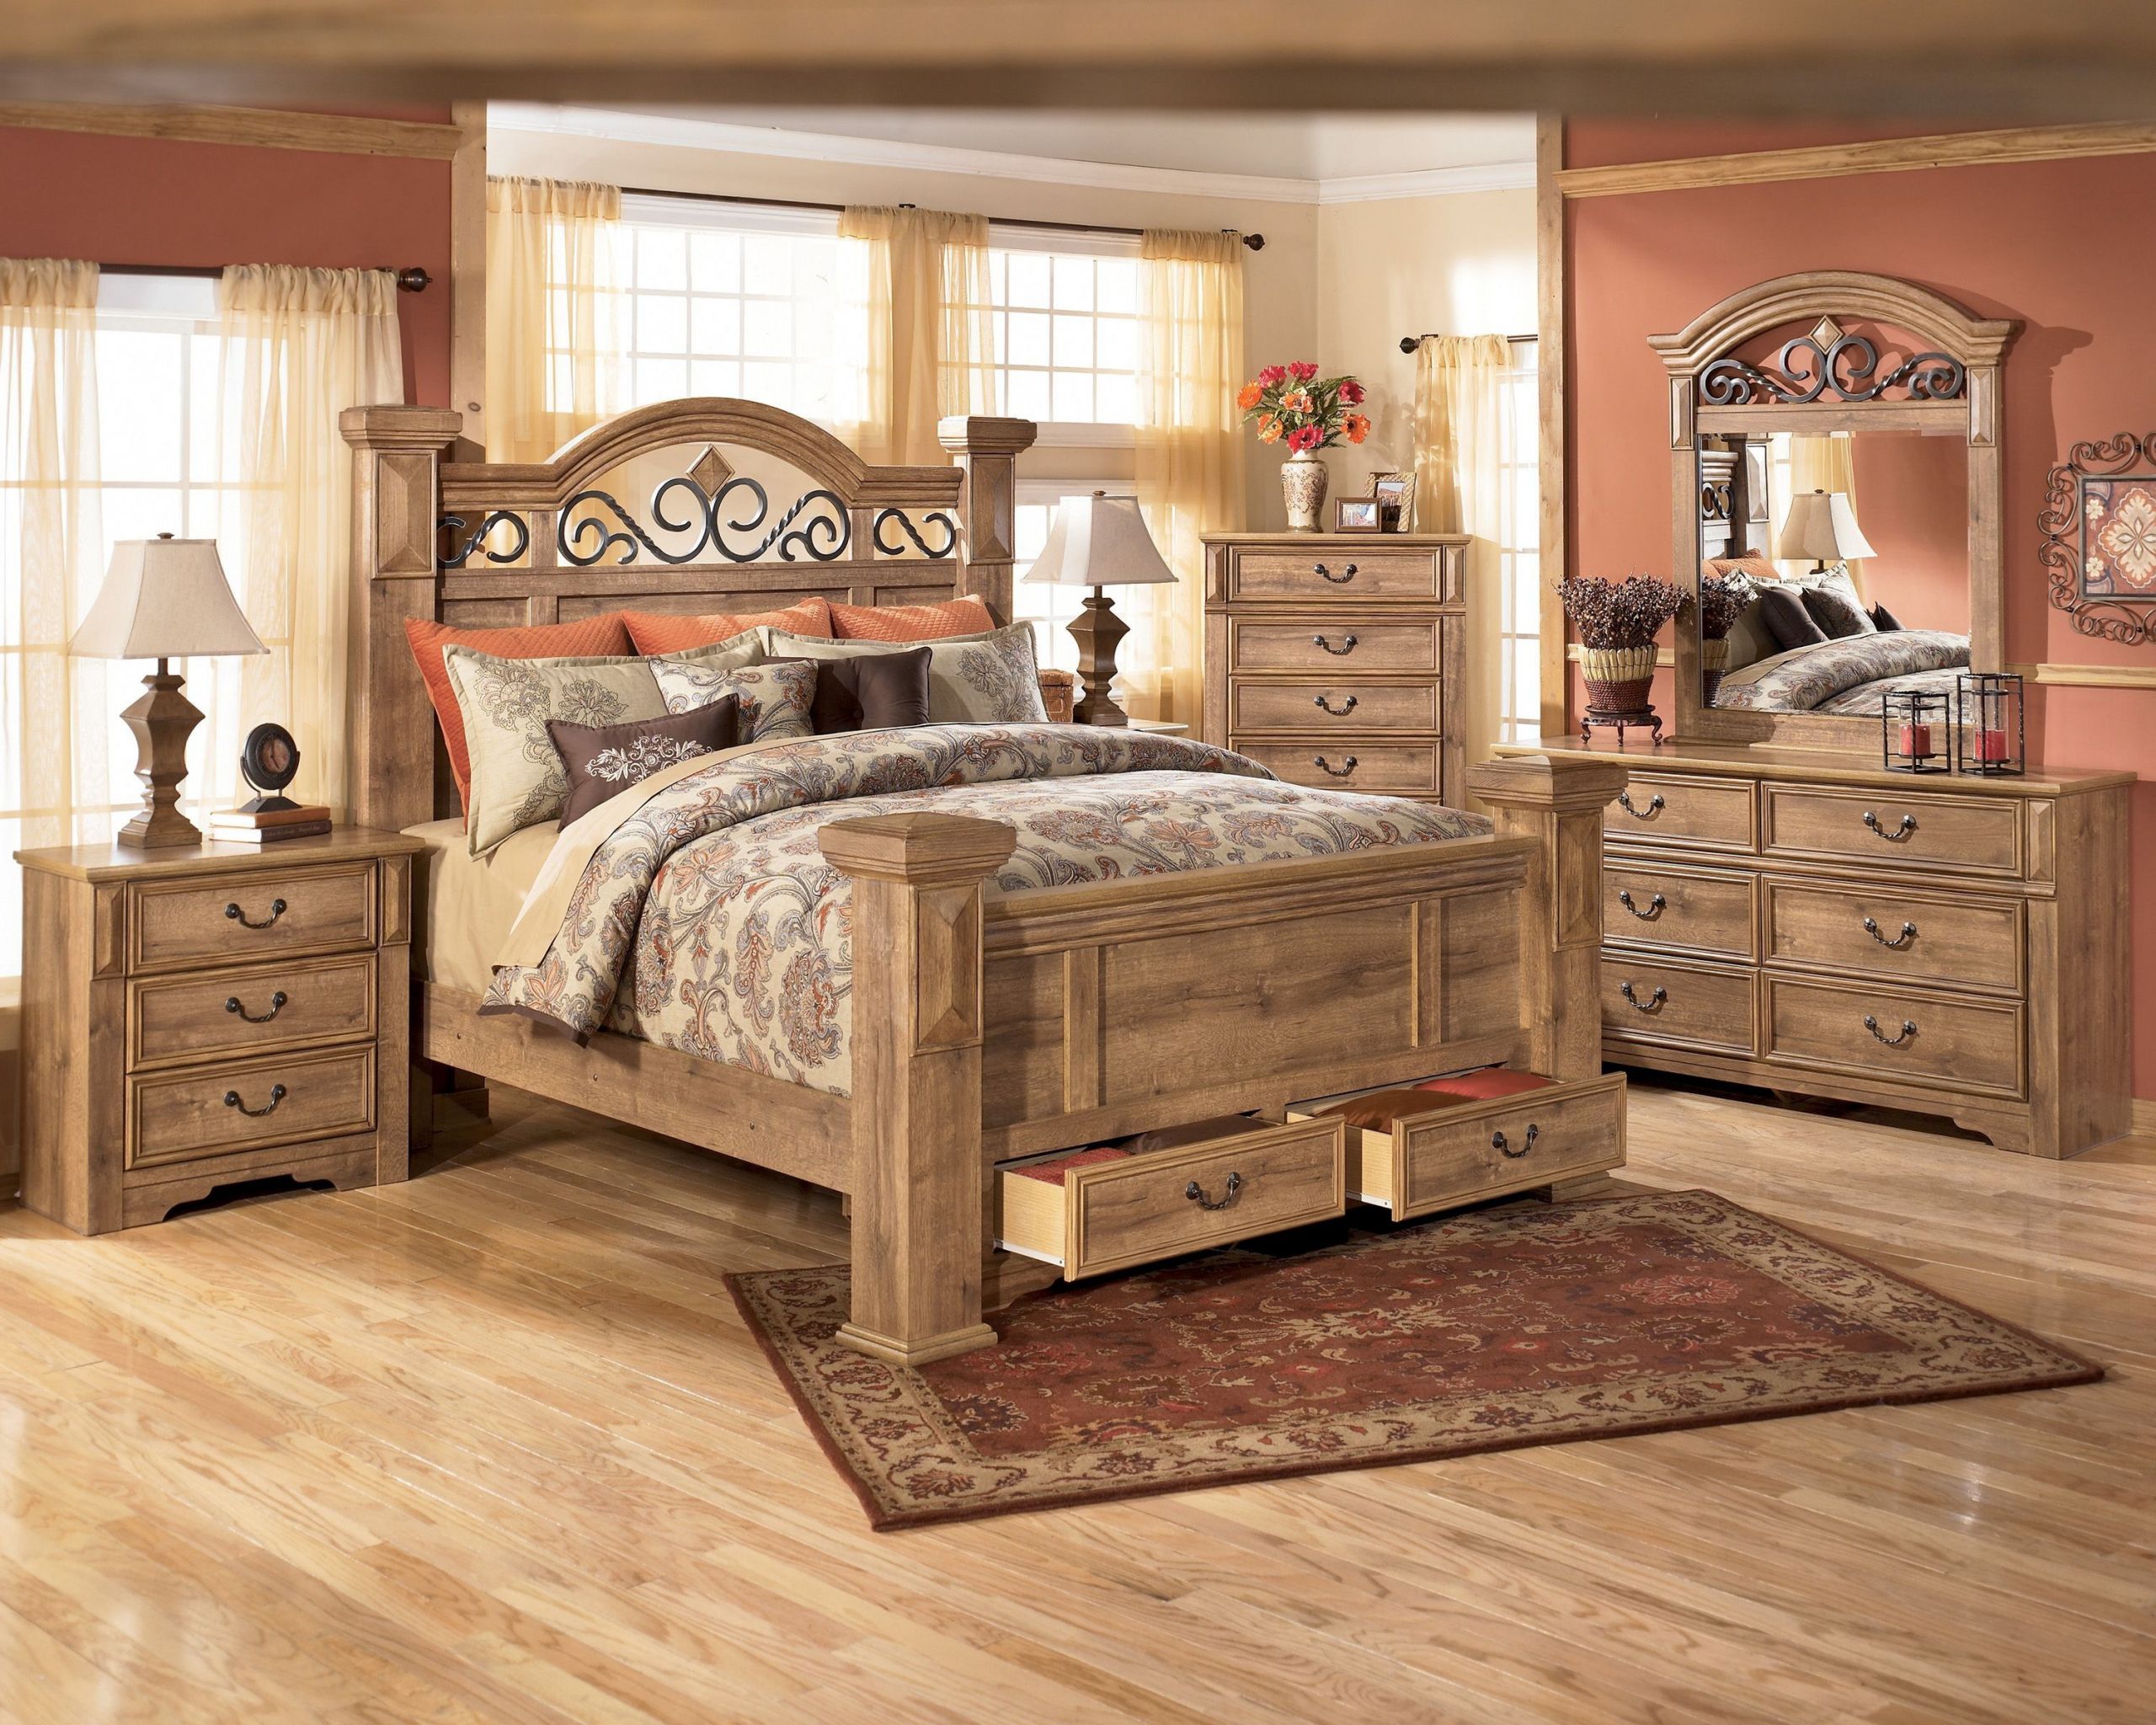 Rustic King Bedroom Sets
 California King Bedroom Furniture Sets